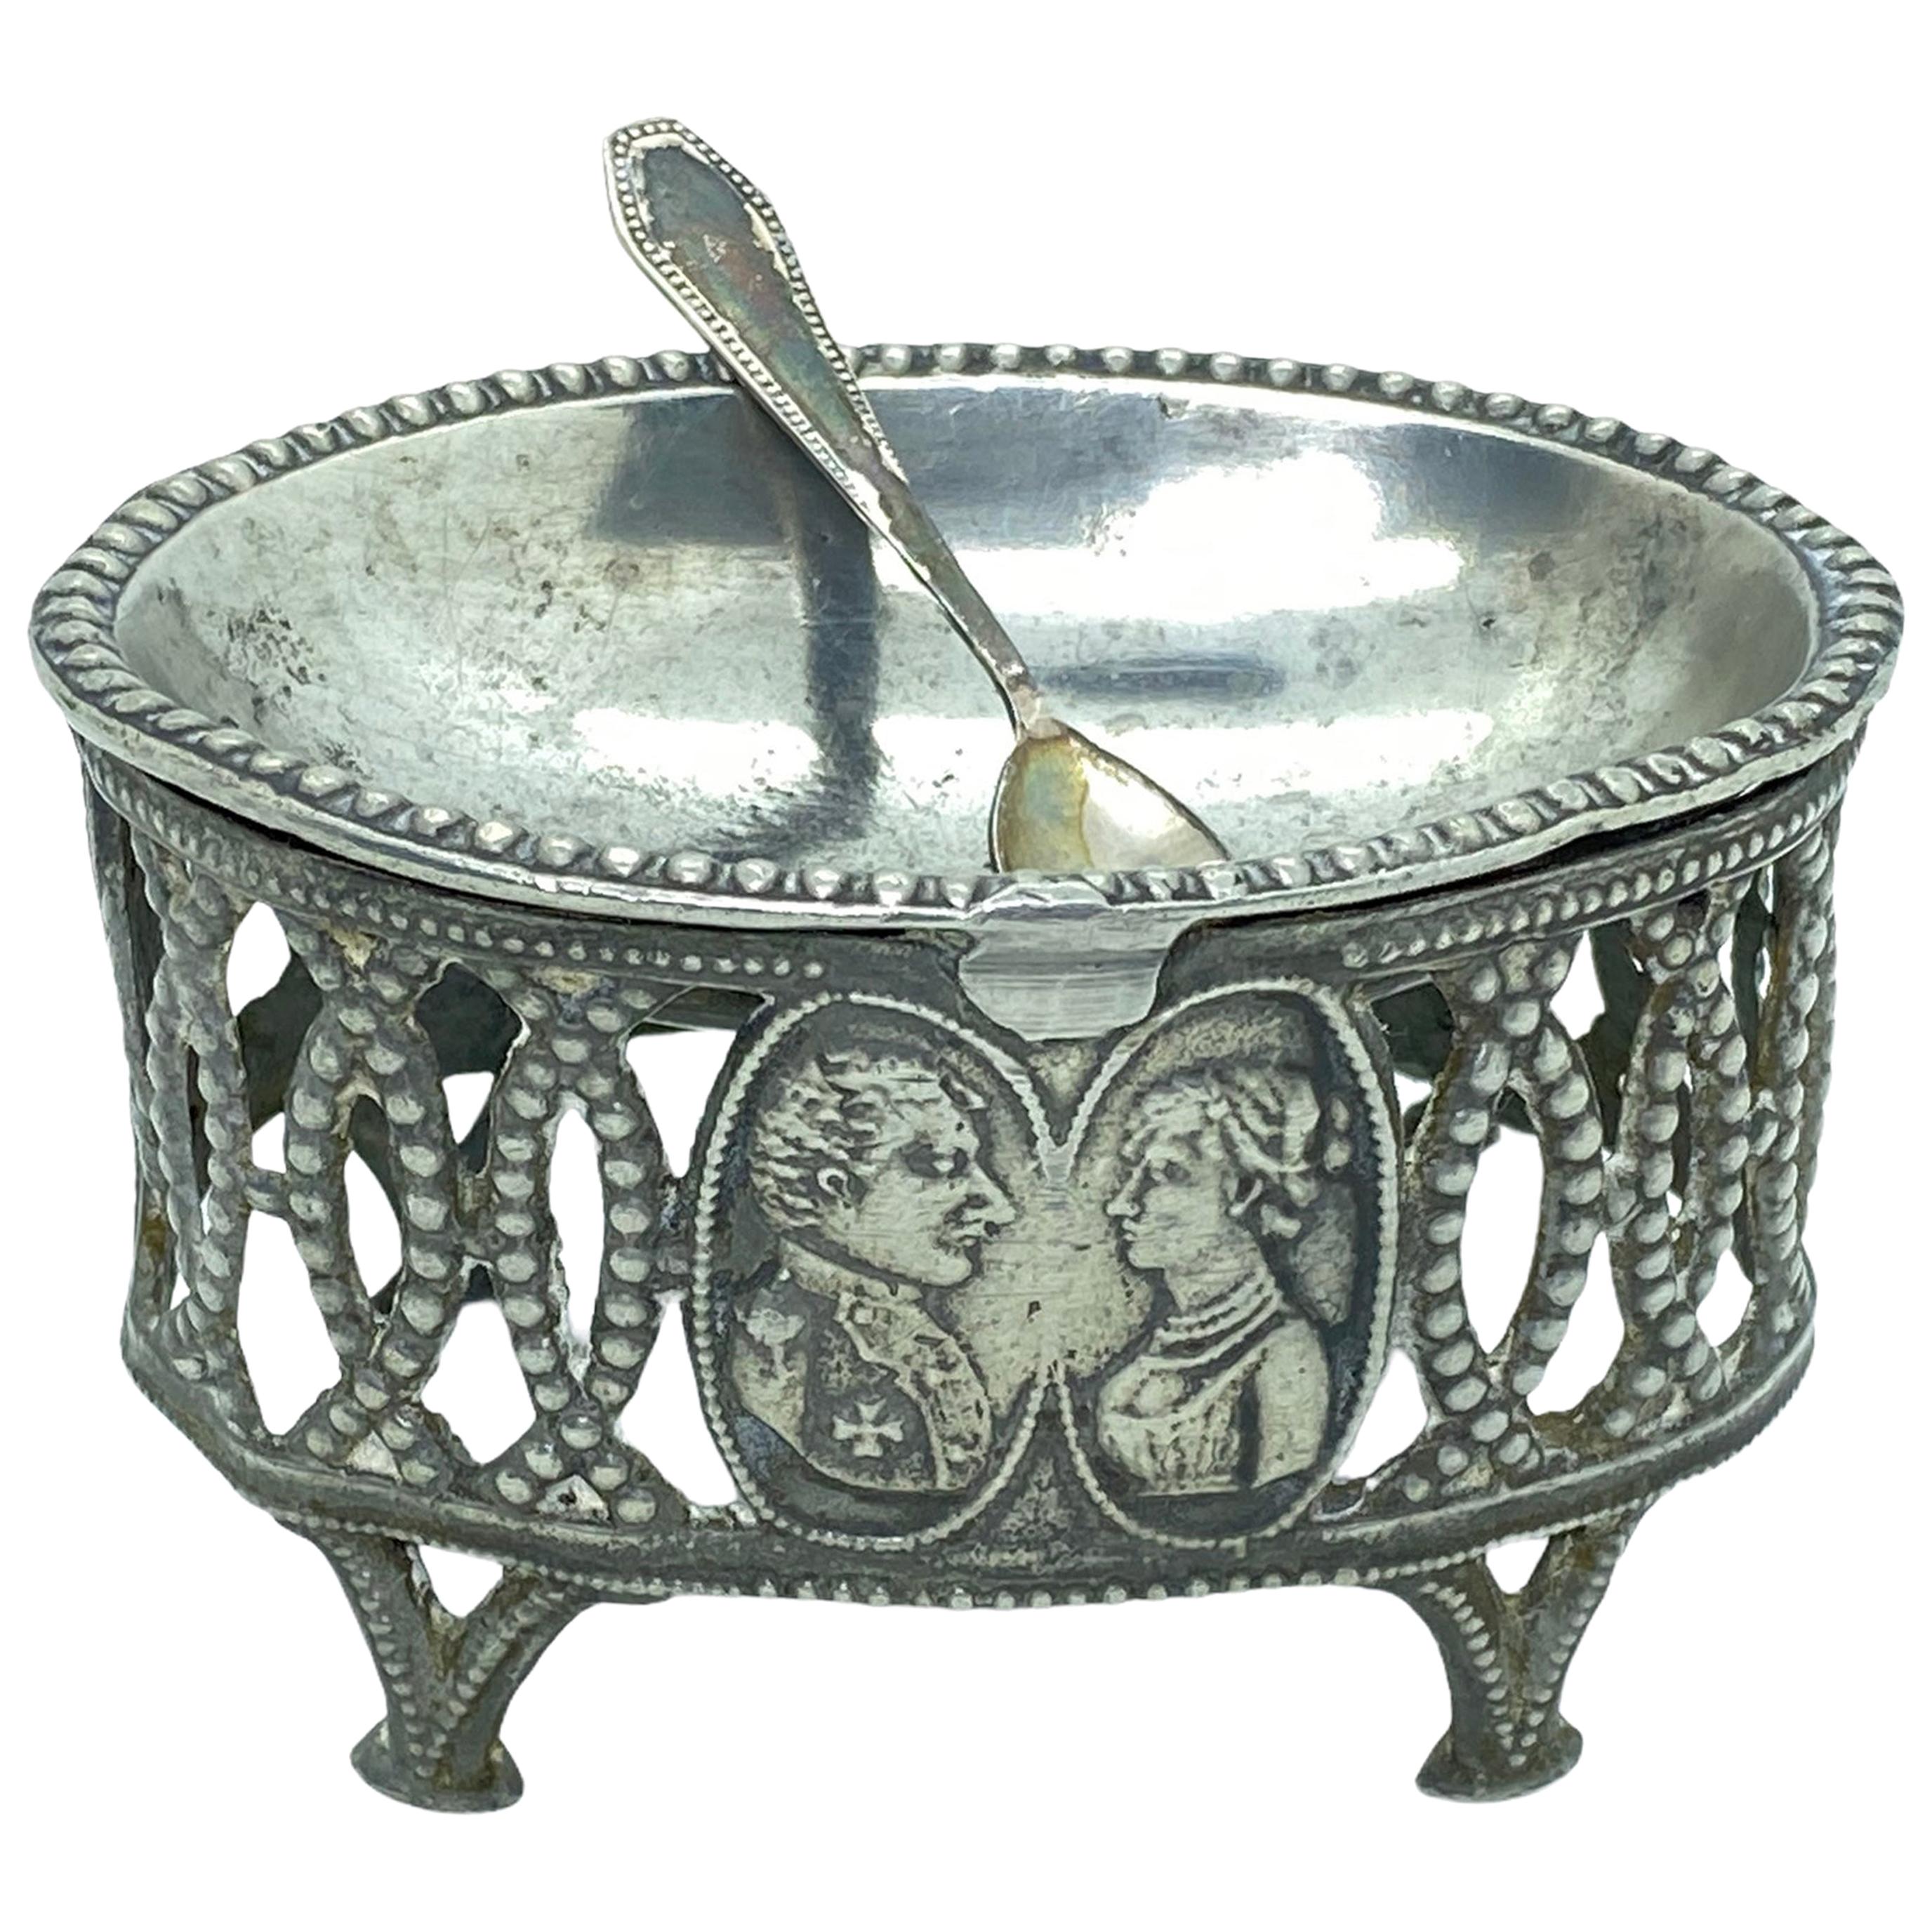 Cache-pot à sel ouvert en métal argenté vintage, années 1880, Allemagne ou Autriche